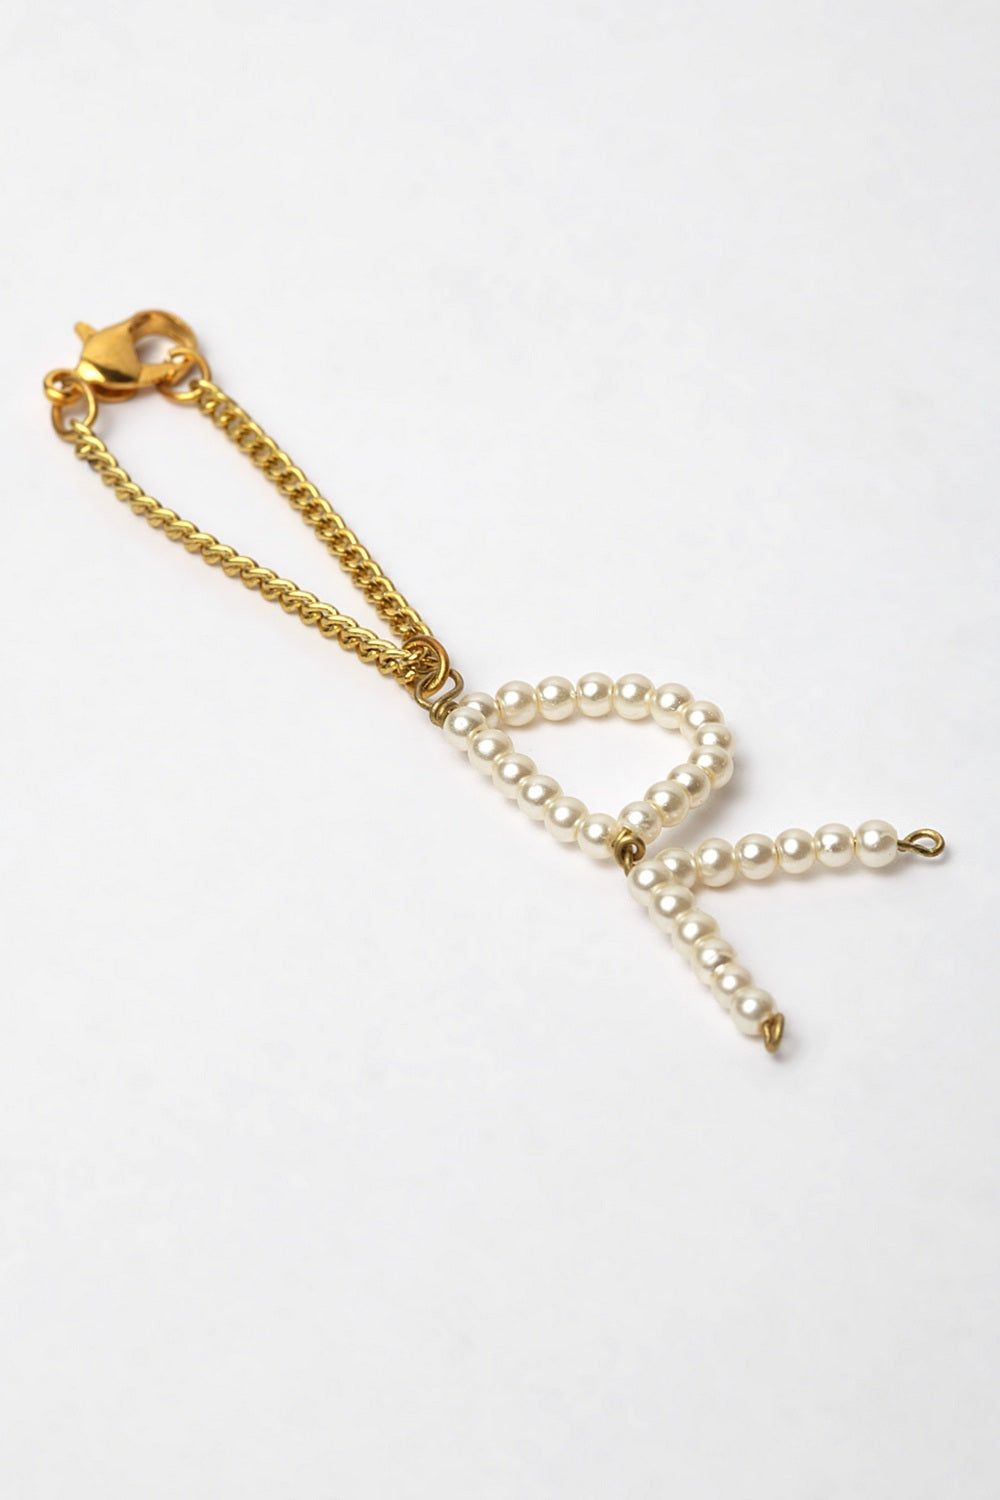 Buy Women's Brass Bracelet at Karmaplace